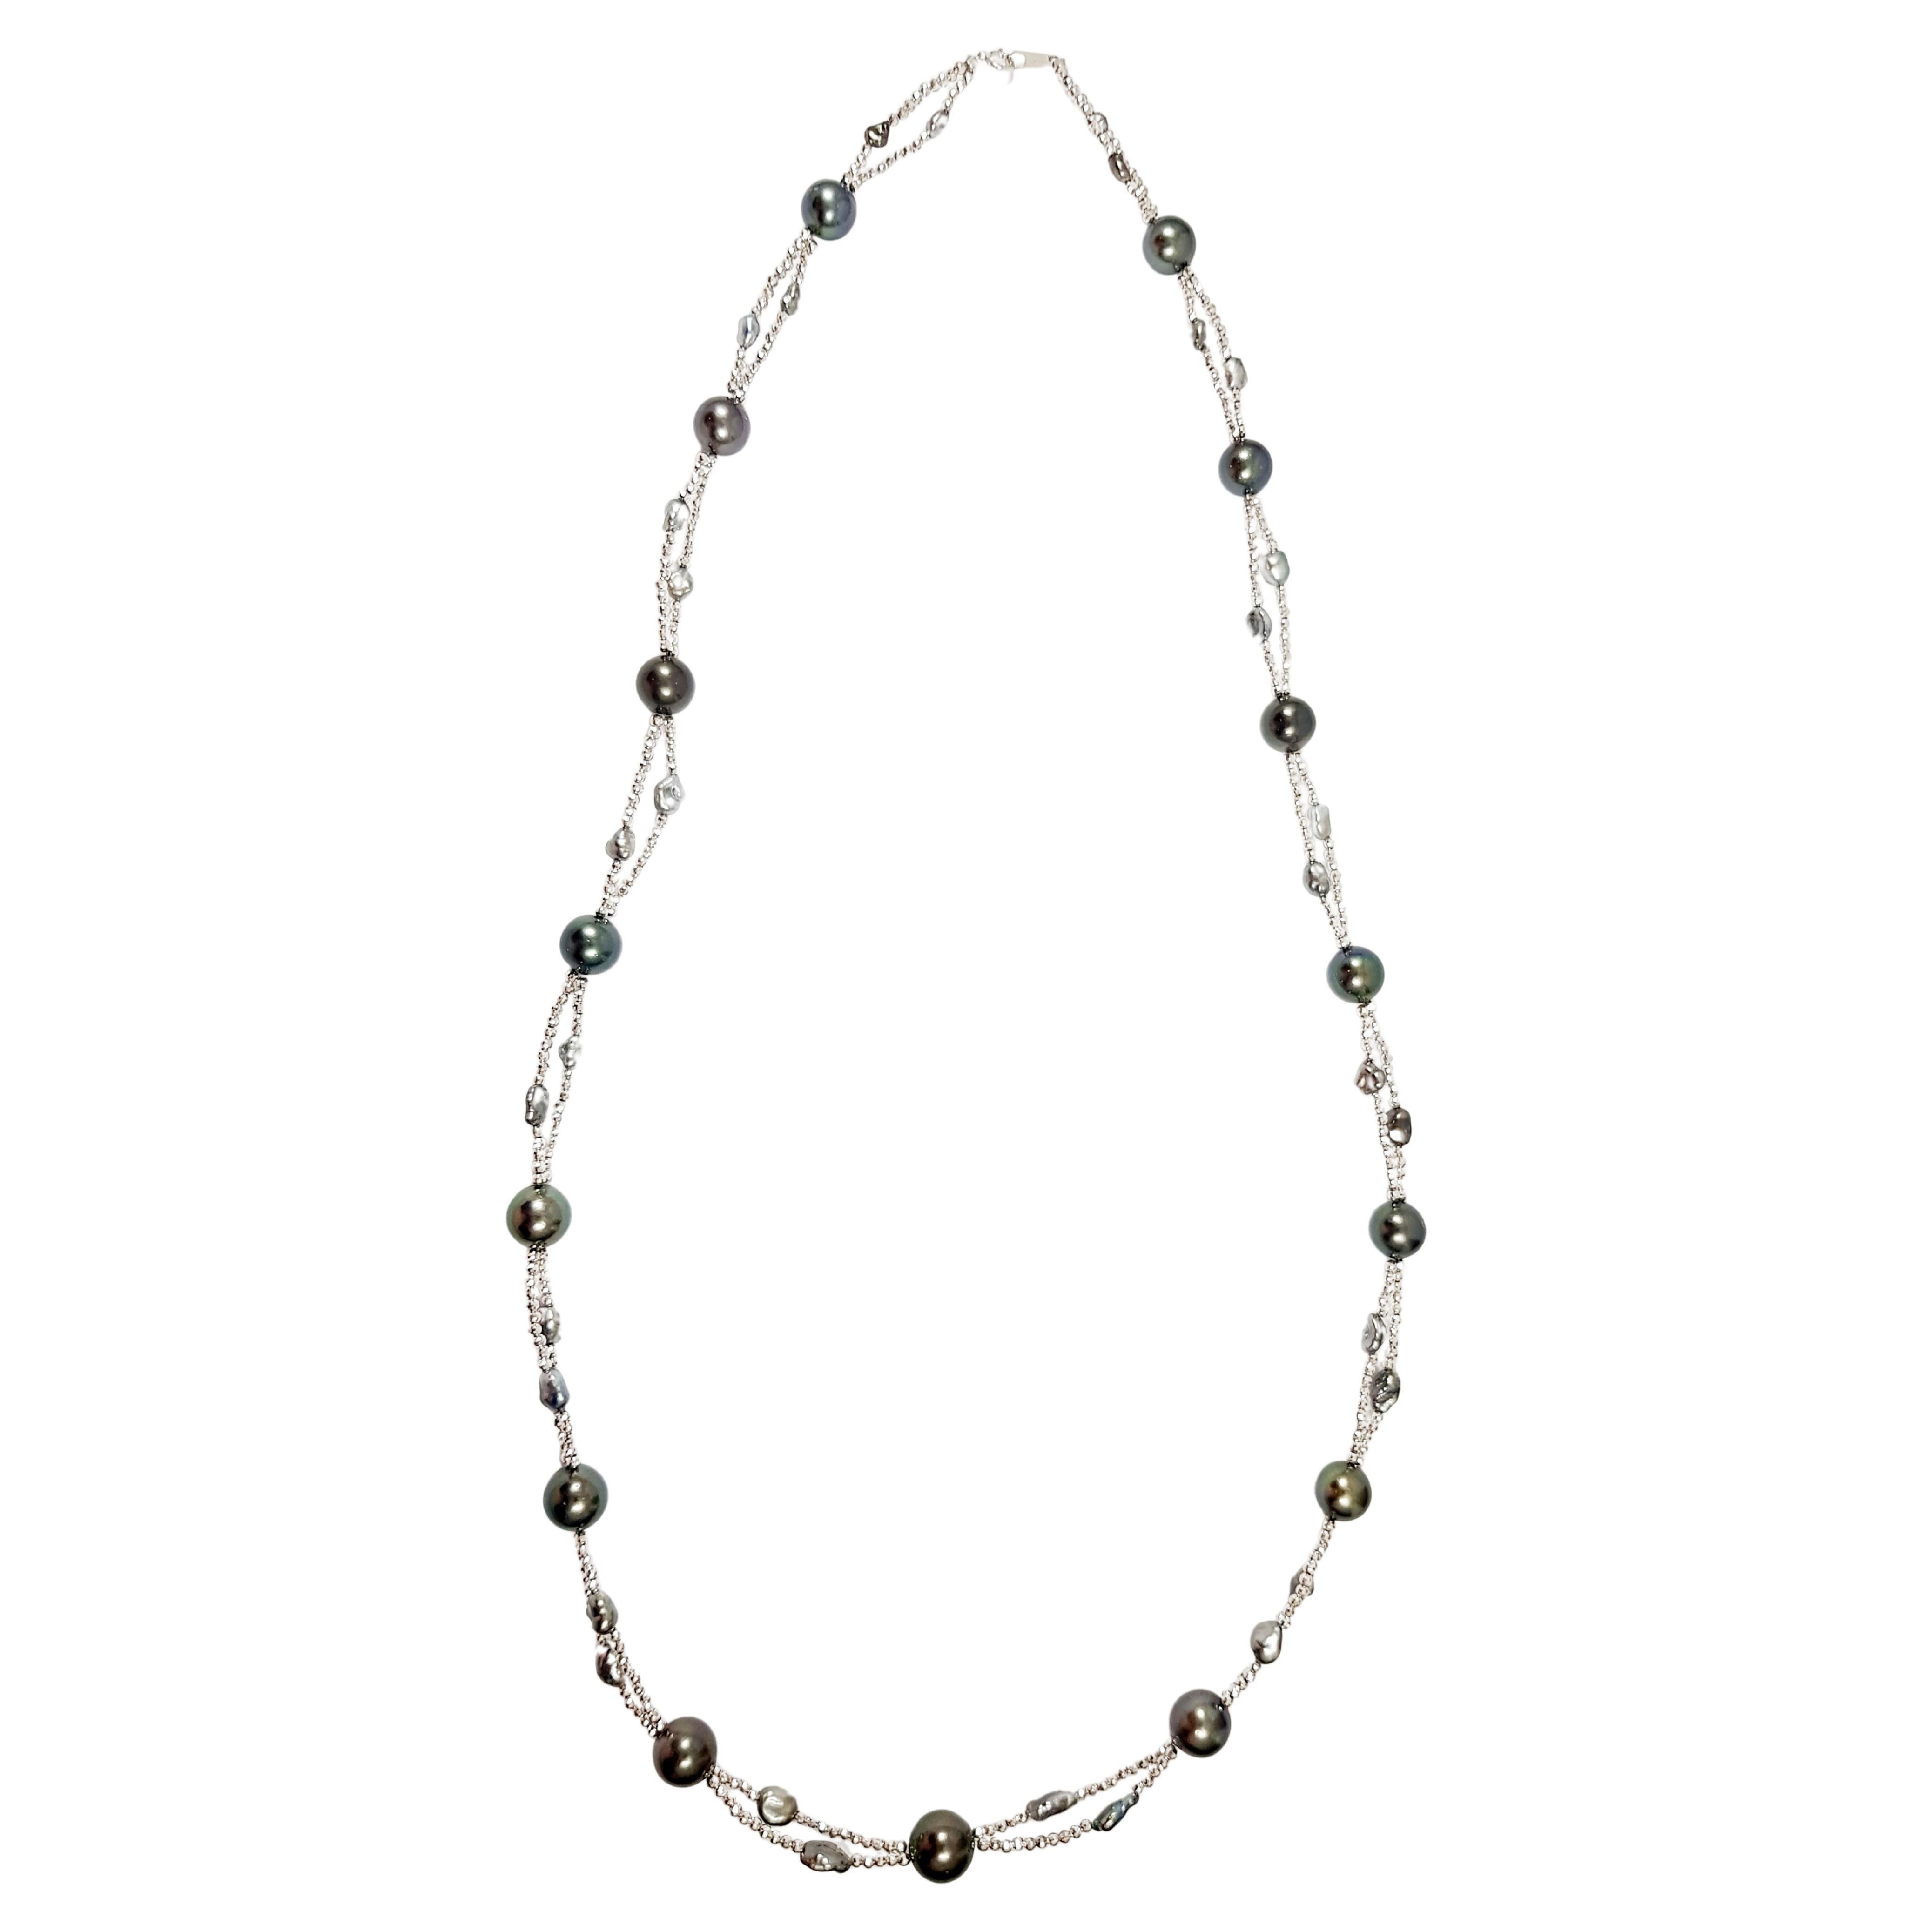 Collier de perles de Tahiti serties en or blanc 18 carats

Largeur : 1,0 cm 
Longueur : 81,5 cm (32